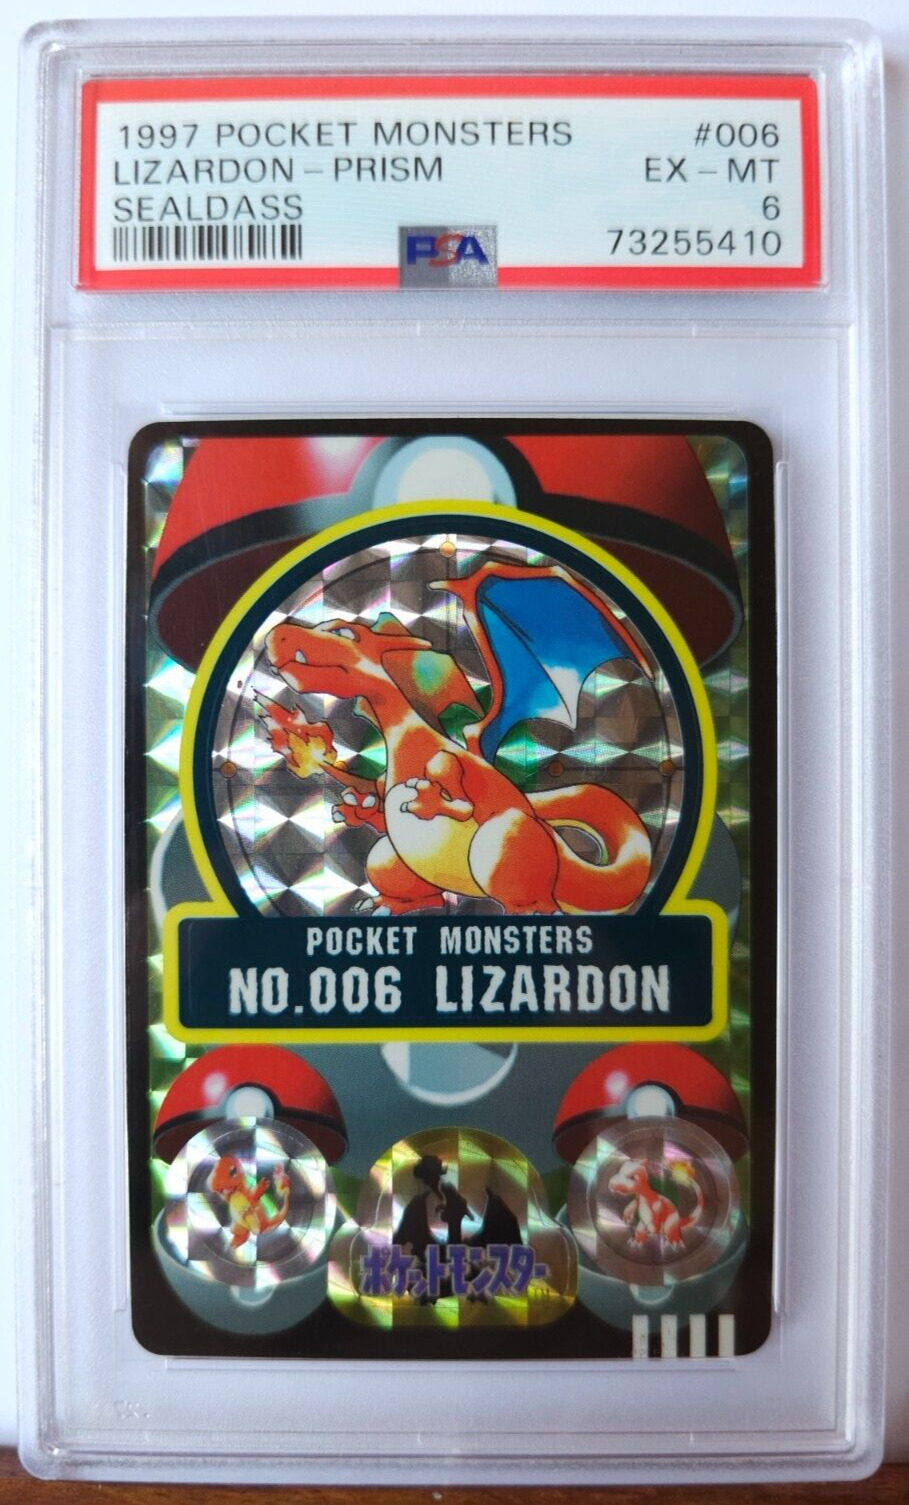 Charizard / Lizardon - 1997 Pokemon Sealdass Prism card #006 vintage - PSA 6